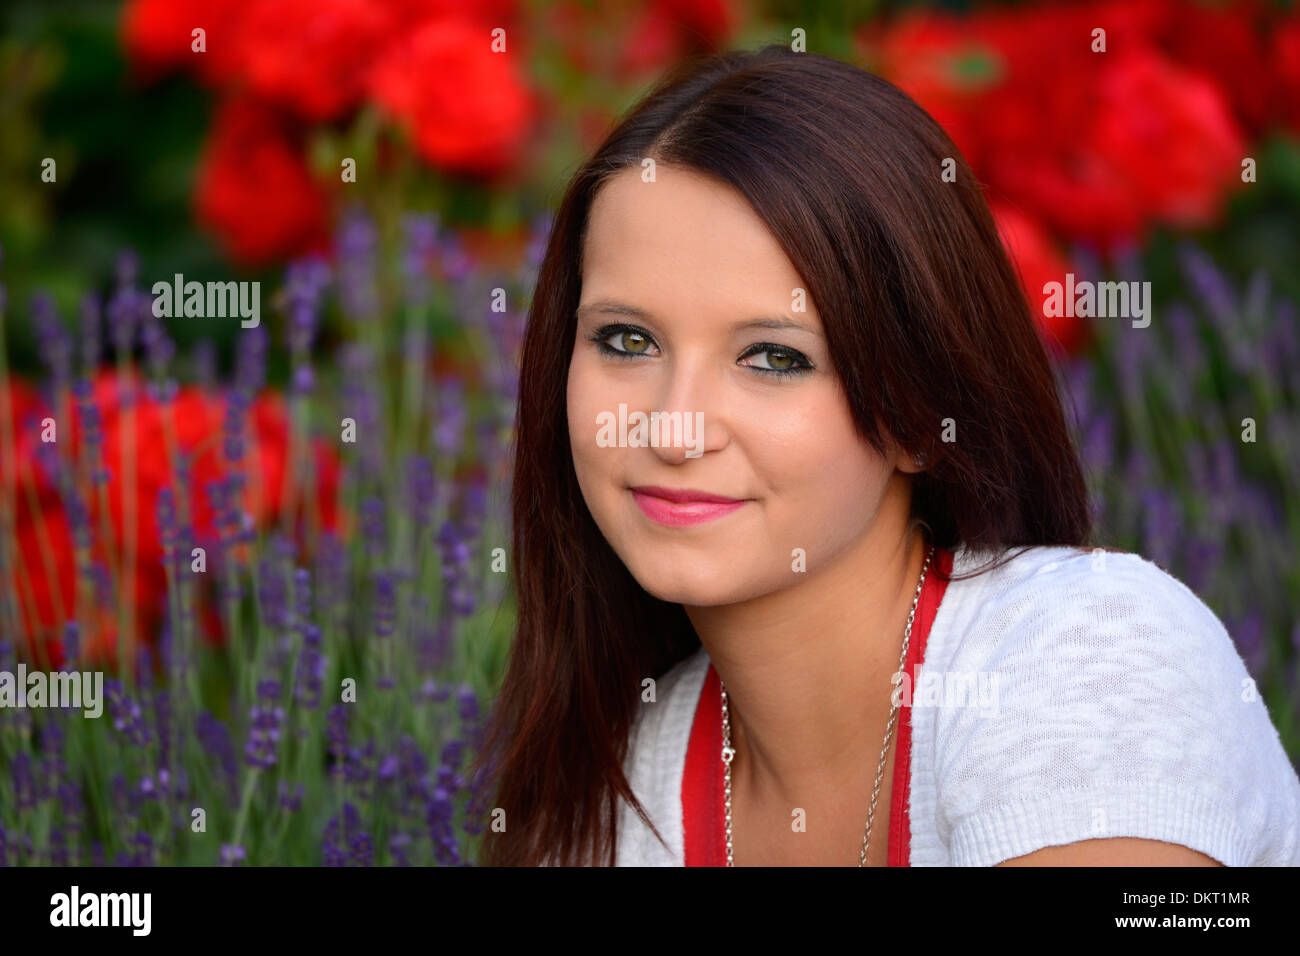 Europa, Schweiz, Frau, junge, Mädchen, Brünette, Blumen, Garten, Modell  veröffentlicht Stockfotografie - Alamy